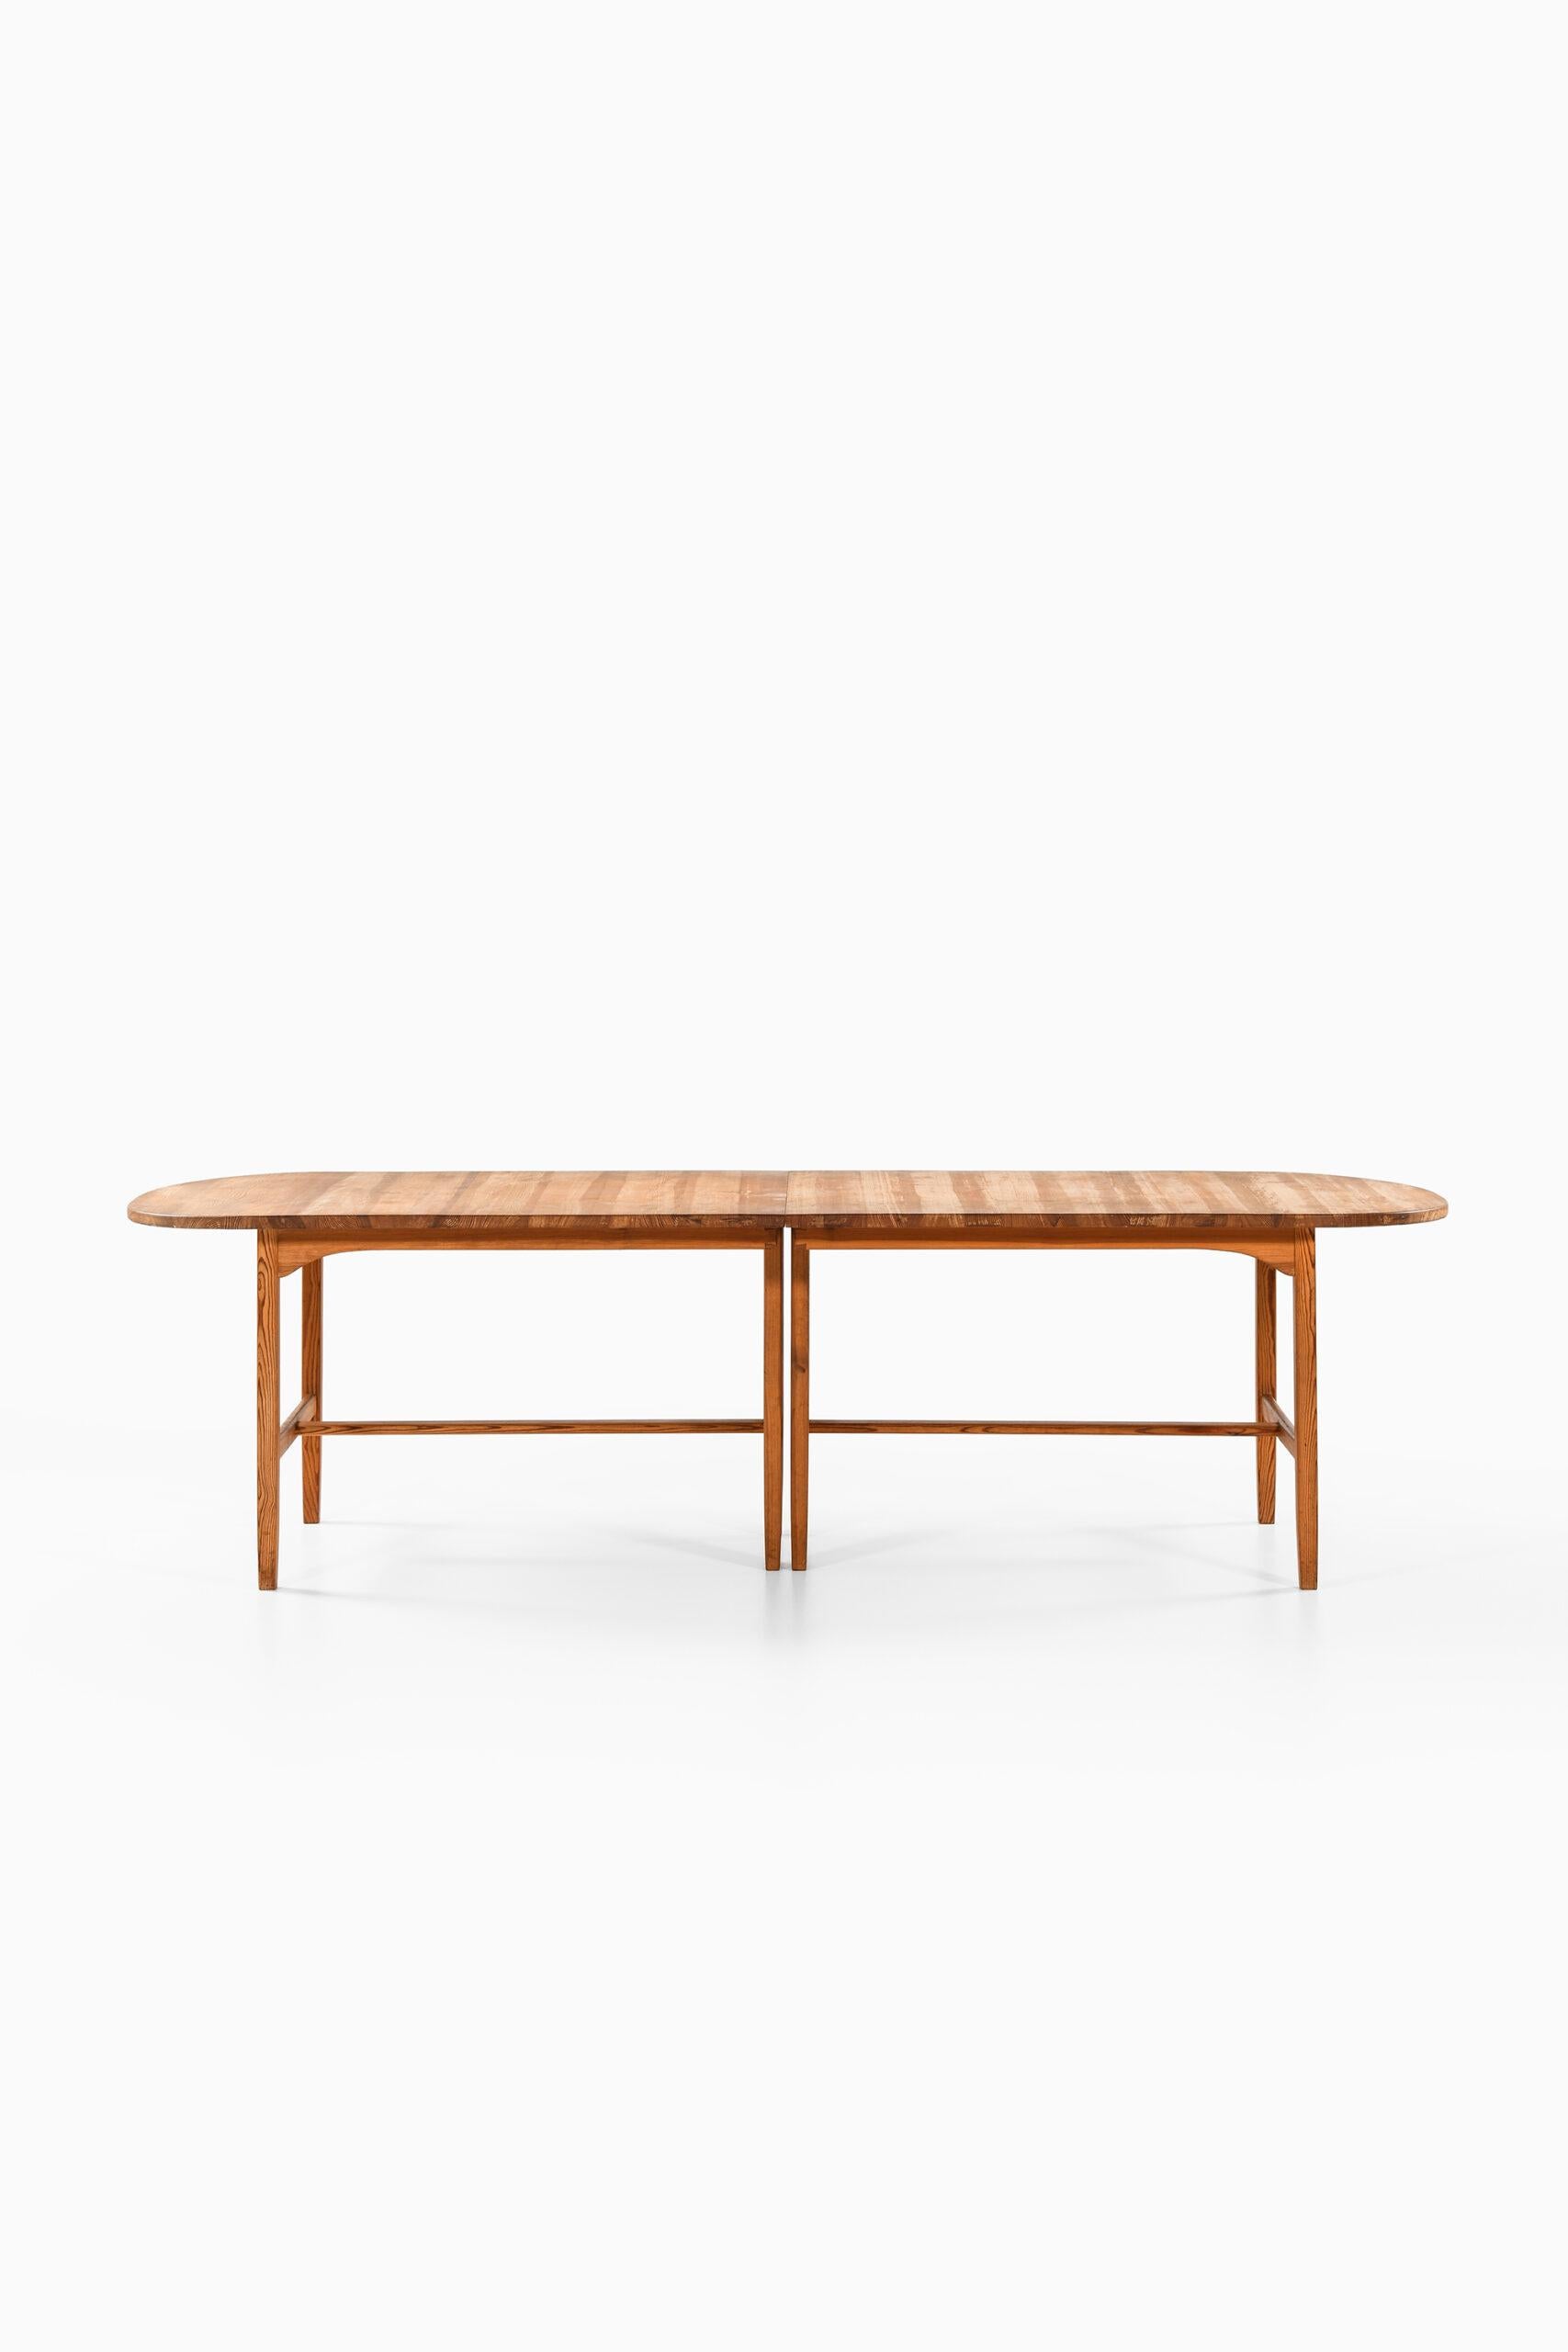 Very rare dining table model Sörgården designed by Carl Malmsten. Produced in Sweden.